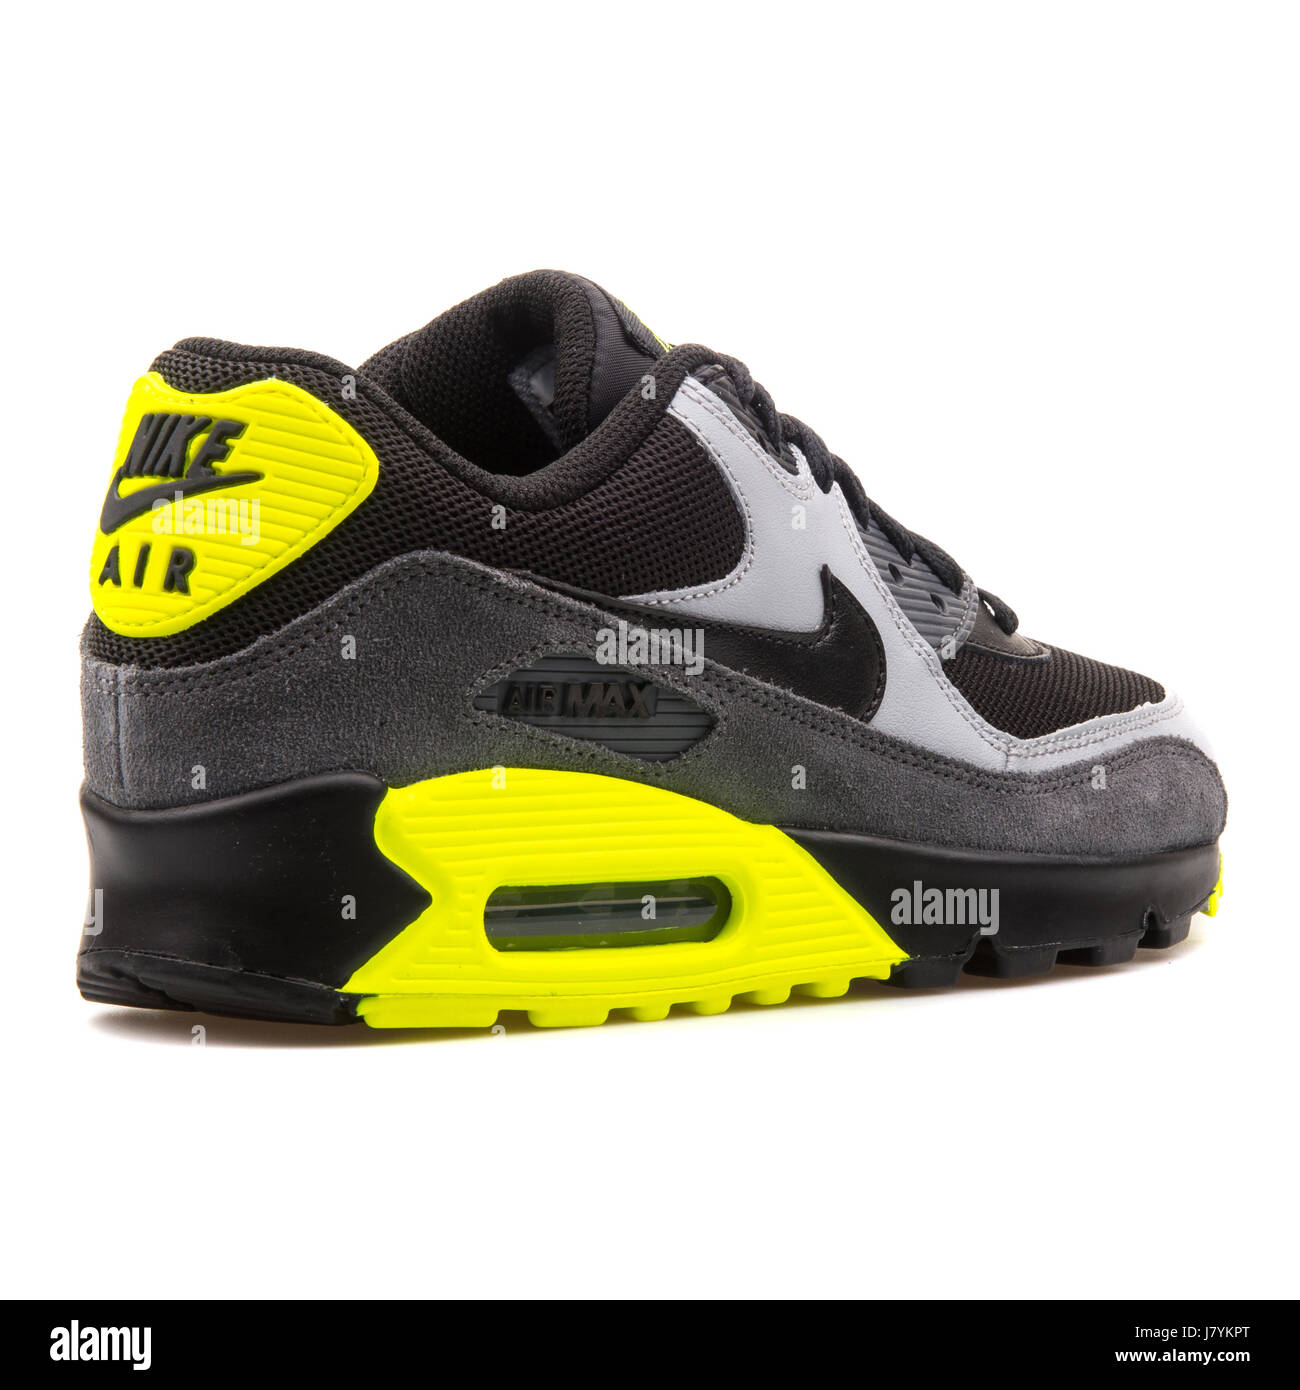 Talla Procesando Insustituible Nike Air Max 90 Malla (GS) la juventud negra de cuero gris y amarillo  Sneakers - 724824-002 Fotografía de stock - Alamy